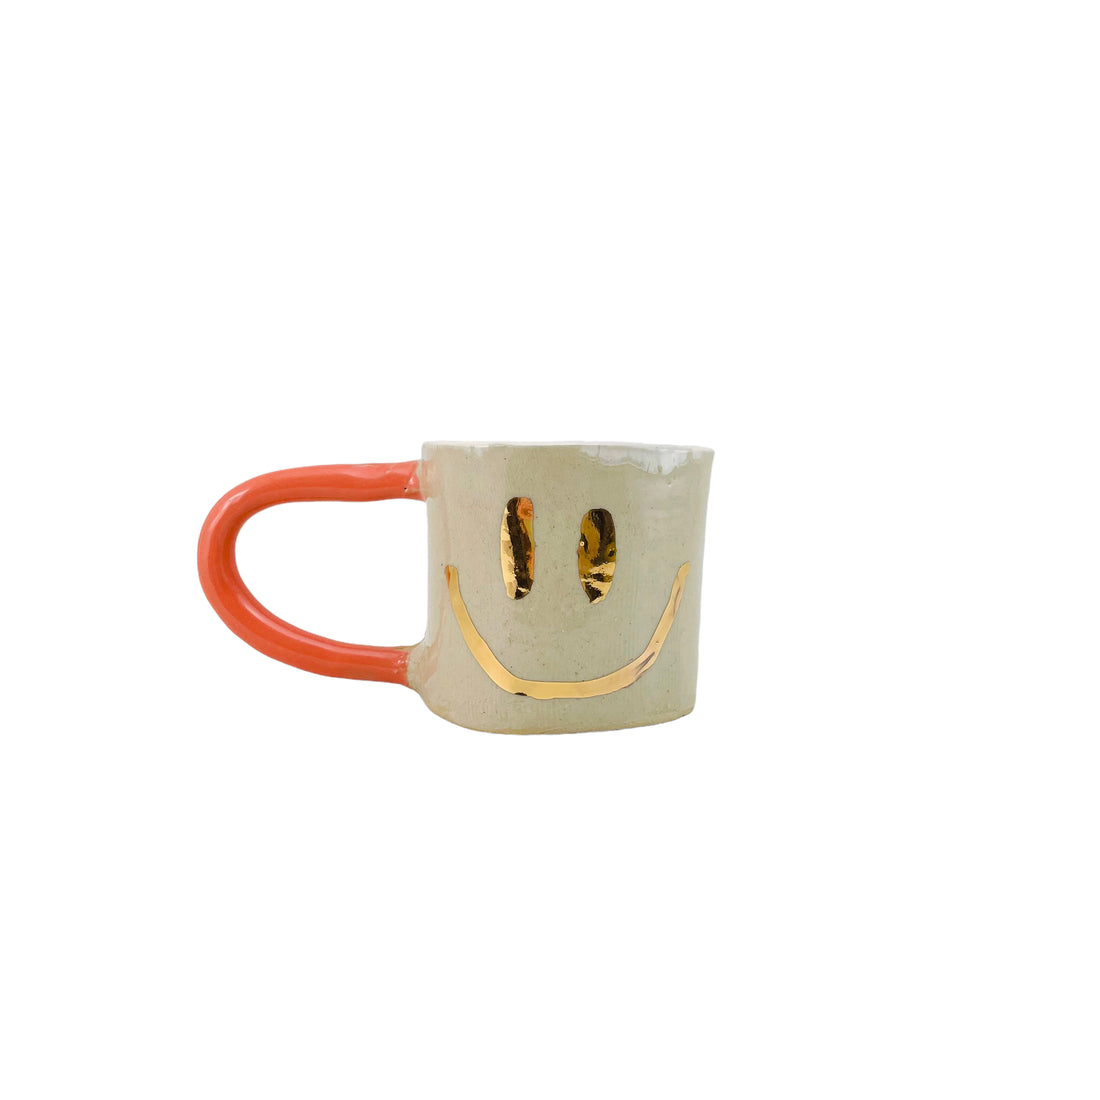 Guld Smiley Krus med orange hank og creme-farvet indre.